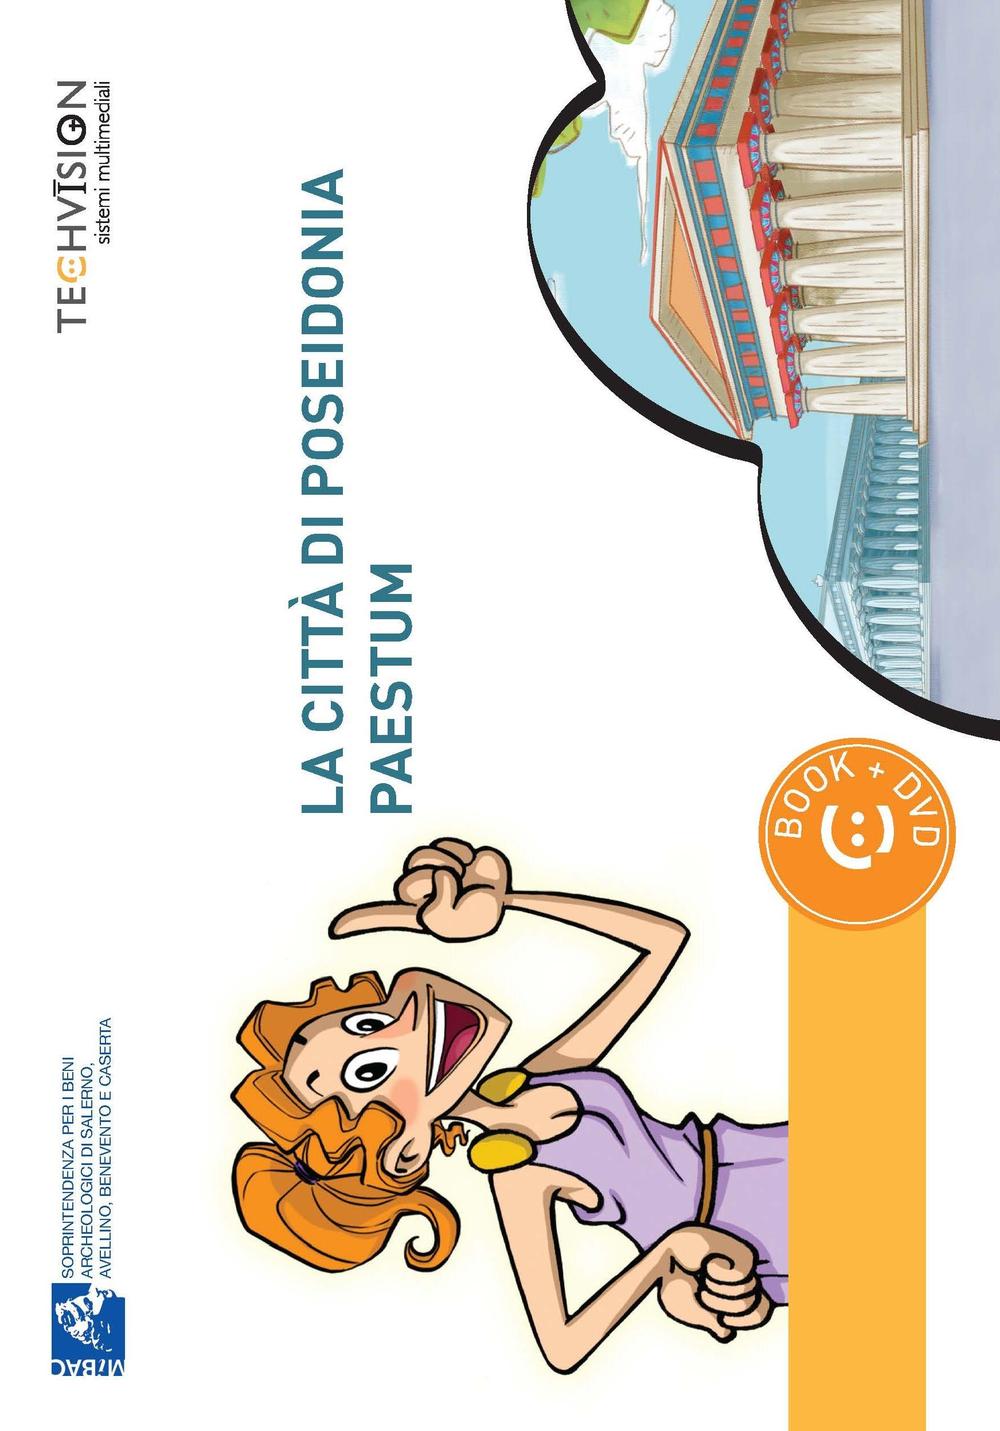 La città di Poseidonia-Paestum. Guida multimediale. Ediz. multilingue. Con DVD